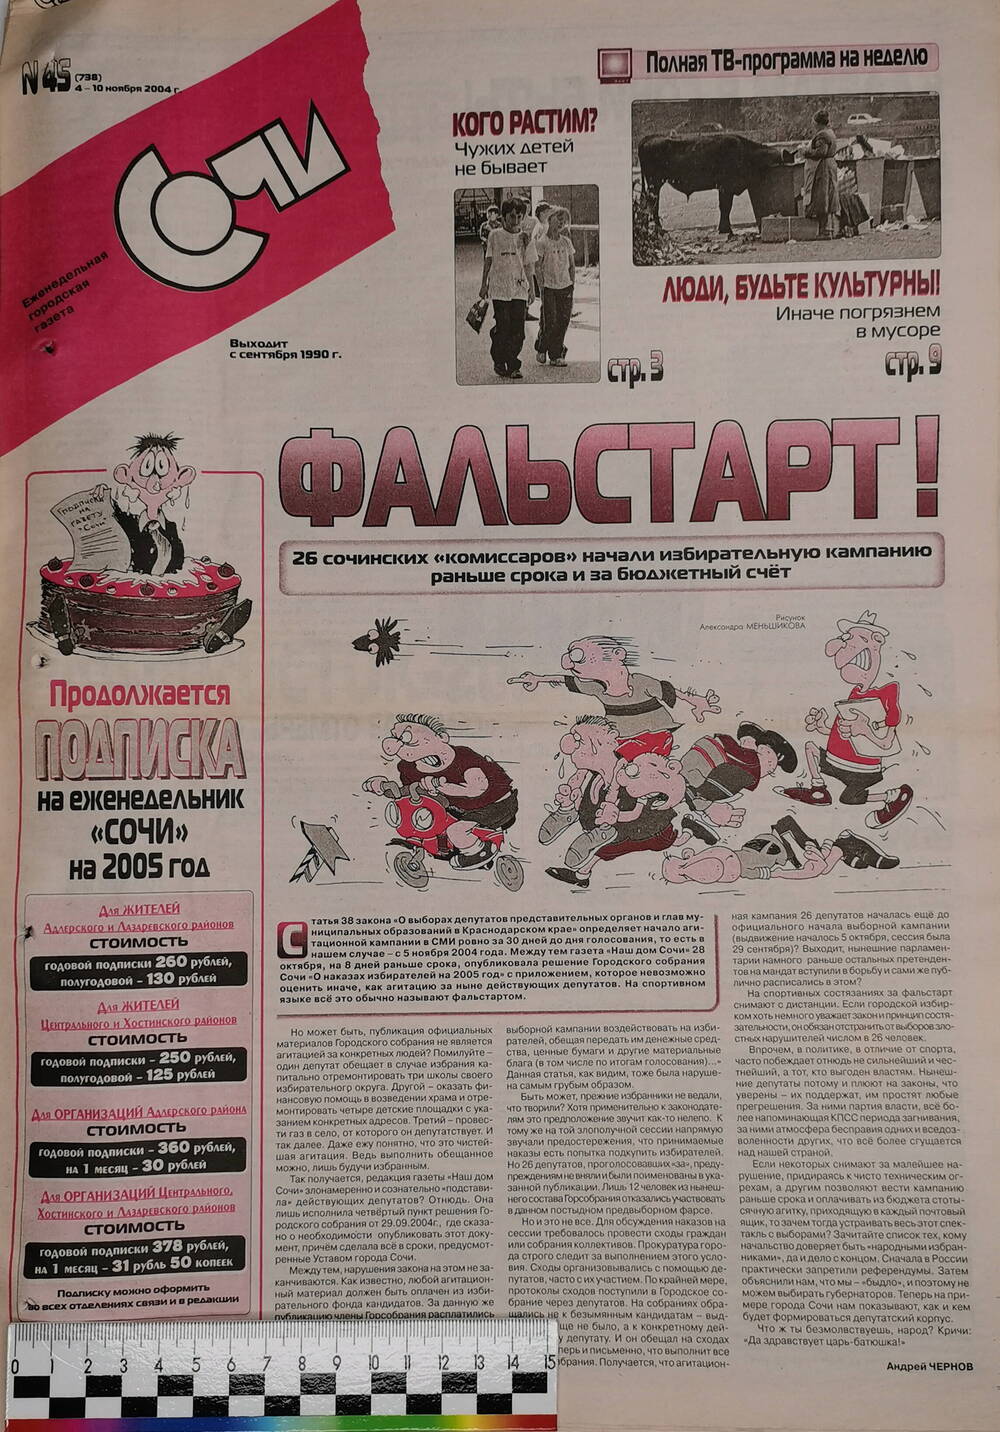 Газета еженедельная городская «Сочи» № 45 (738) с 4 по 10 ноября 2004 г.